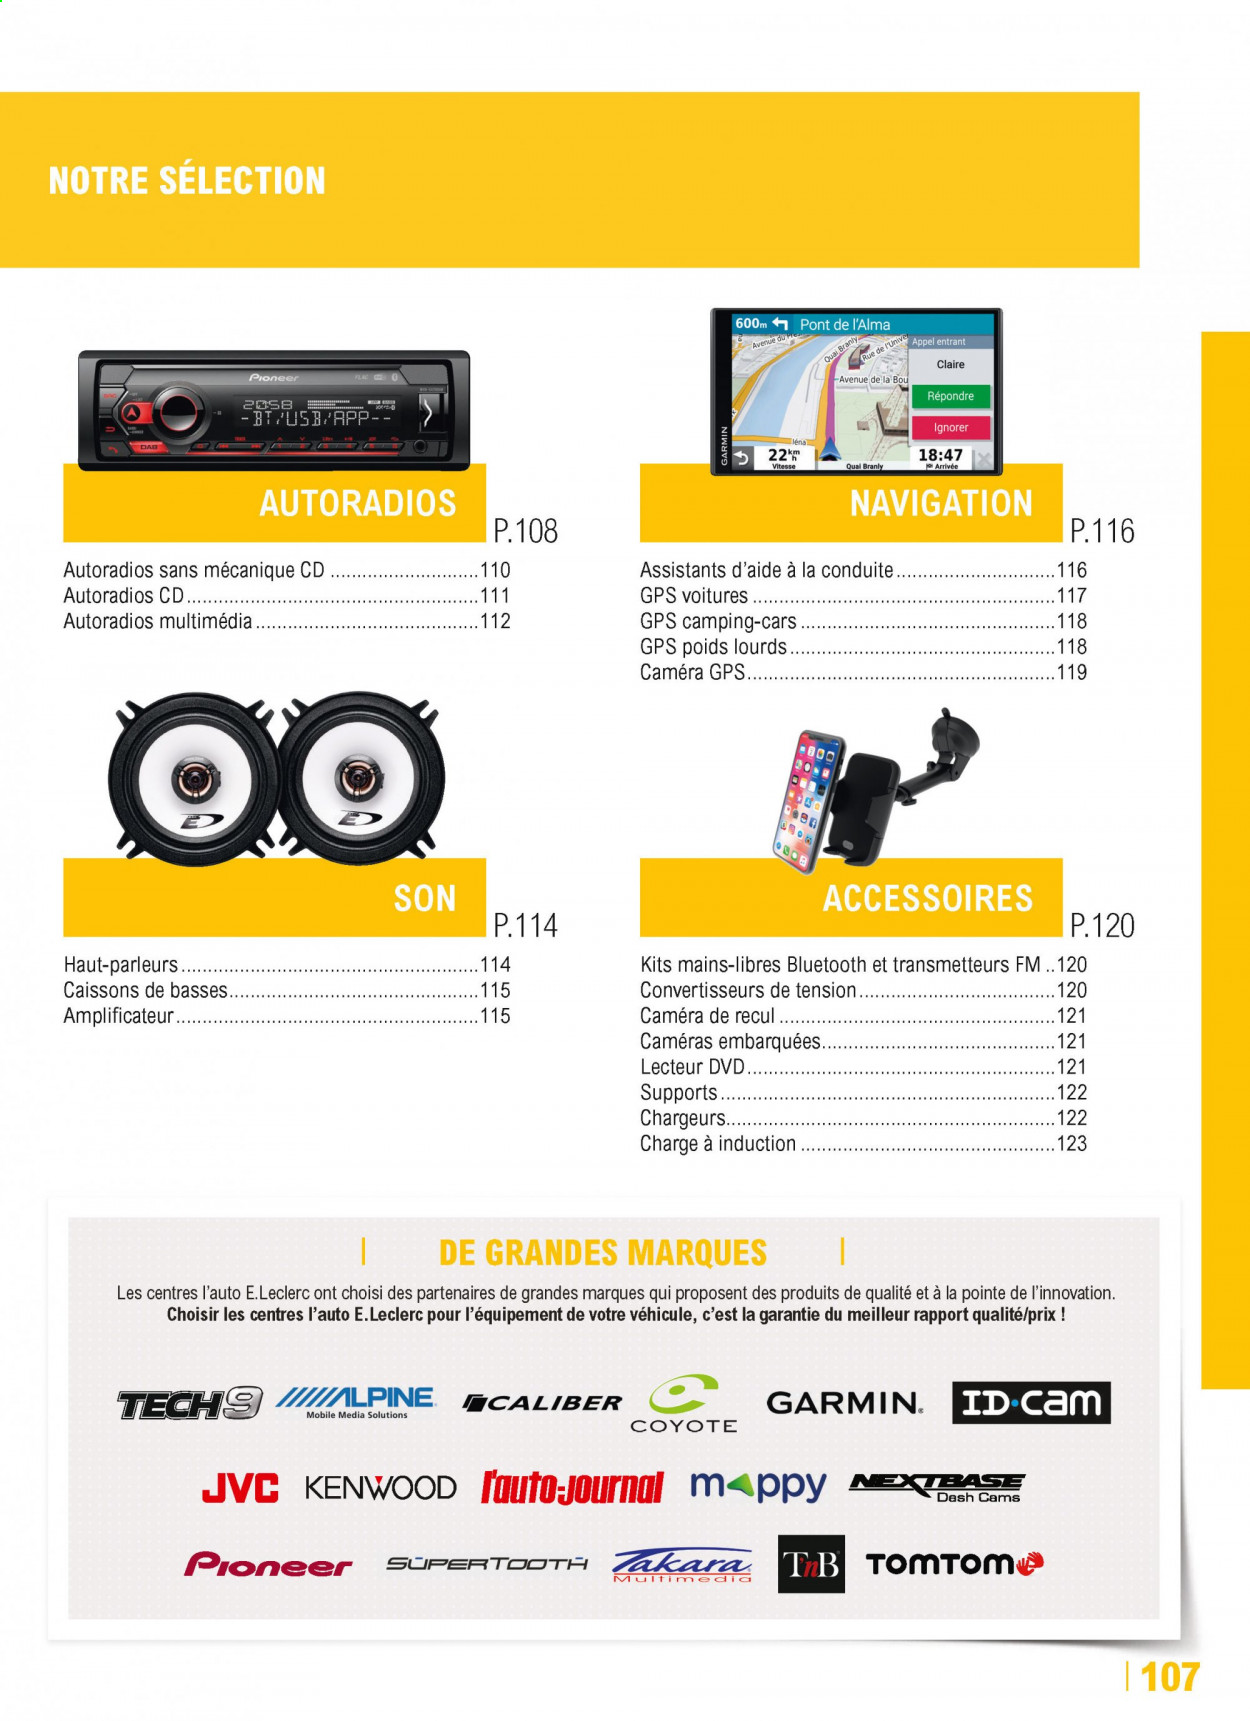 thumbnail - Catalogue E.Leclerc - Produits soldés - Cars, DVD, caméra, TomTom, Pioneer, lecteur dvd, caisson. Page 107.